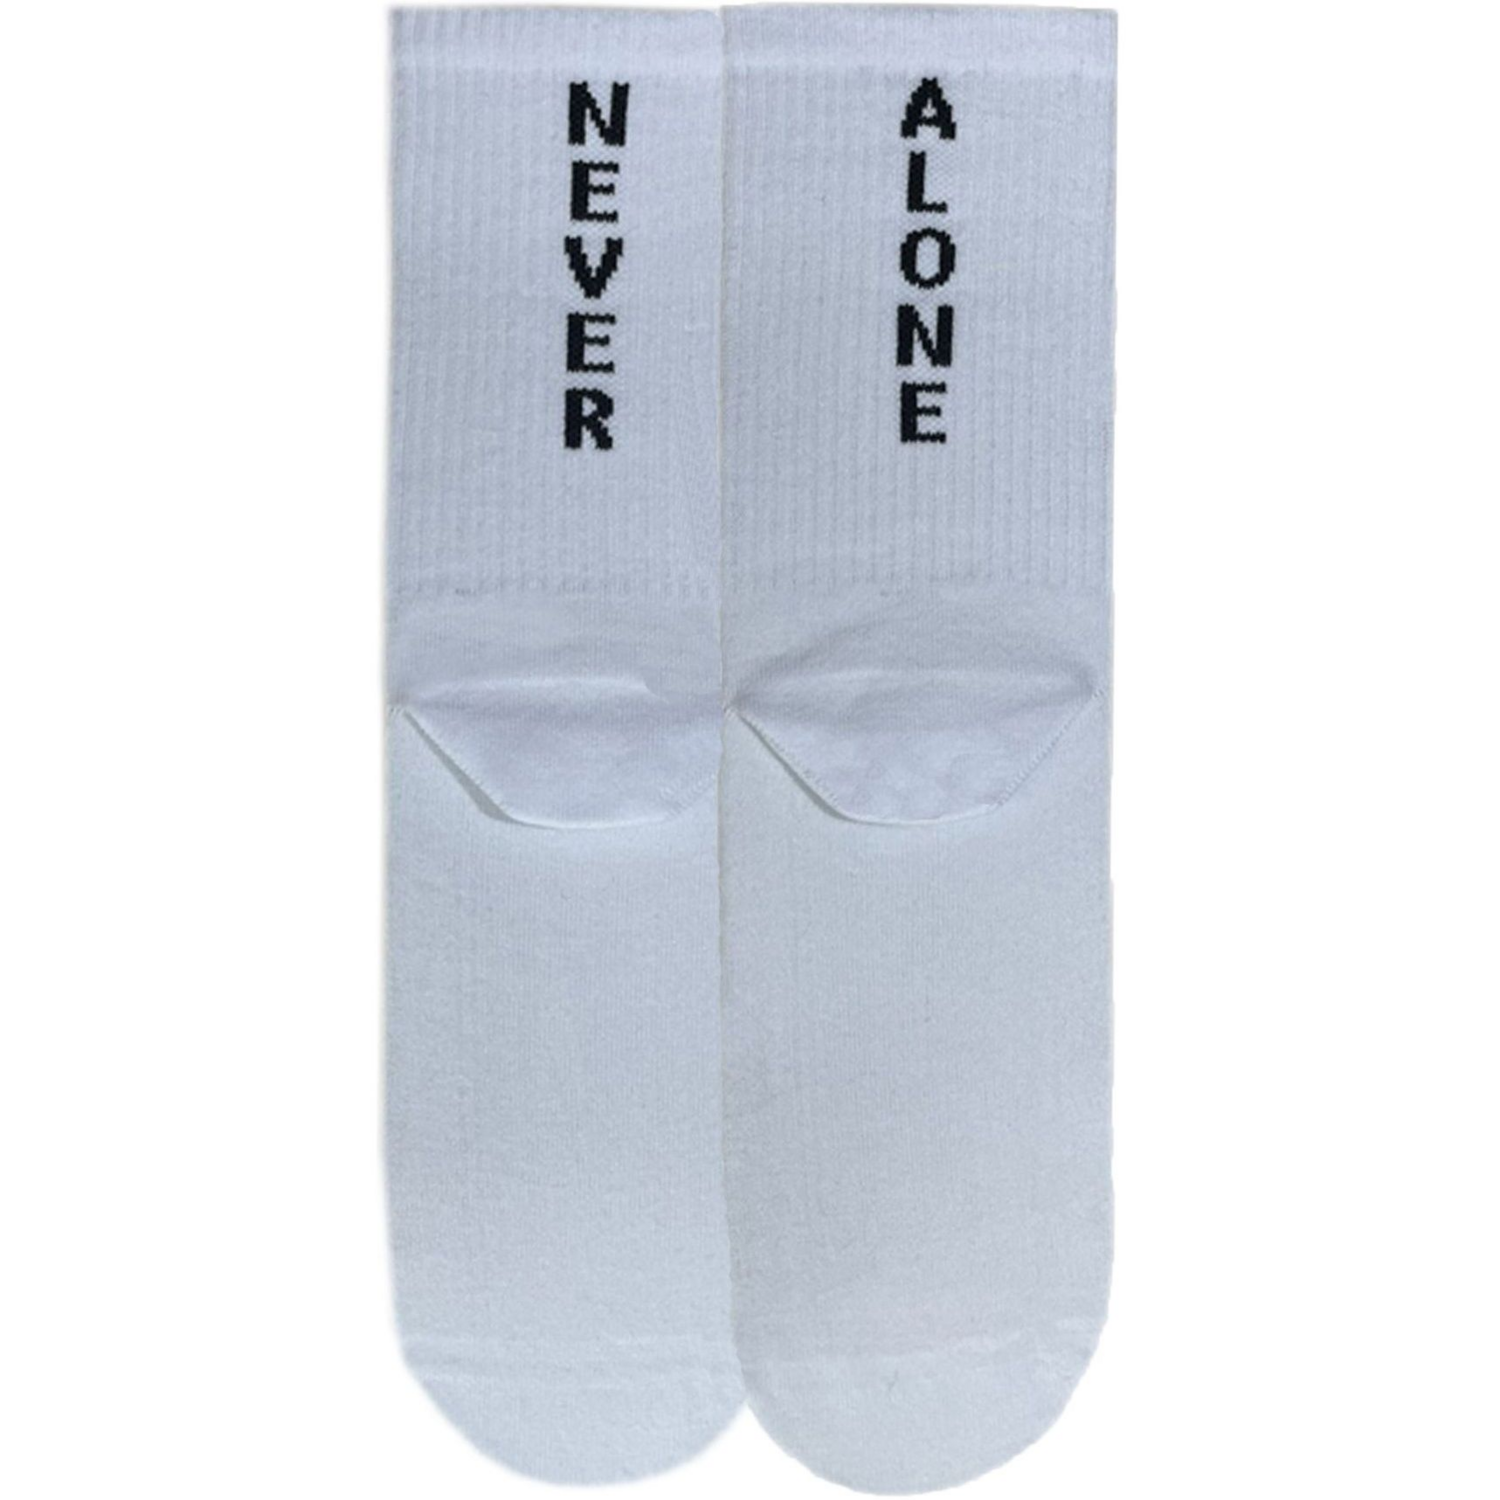 Шкарпетки чоловічі Premier Socks 40-41 1 пара білі з принтом (4820163317915)фото